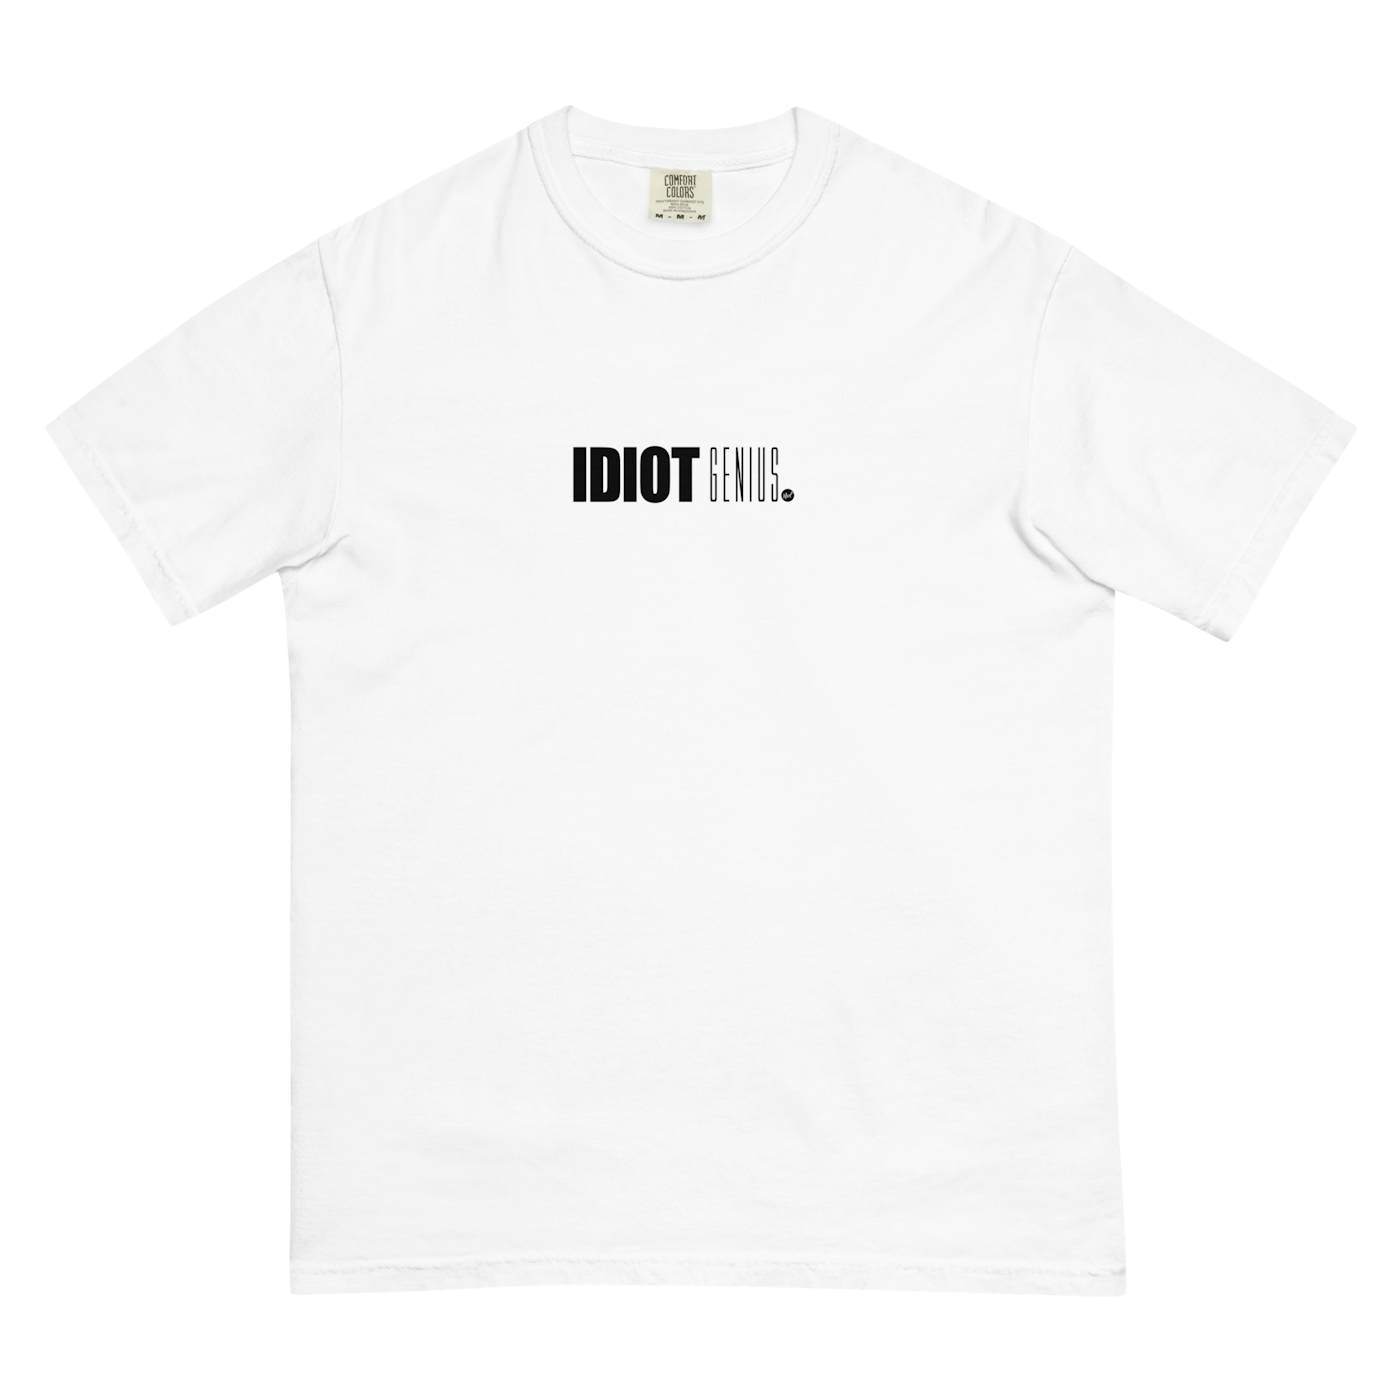 Coley Idiot Genius T-Shirt